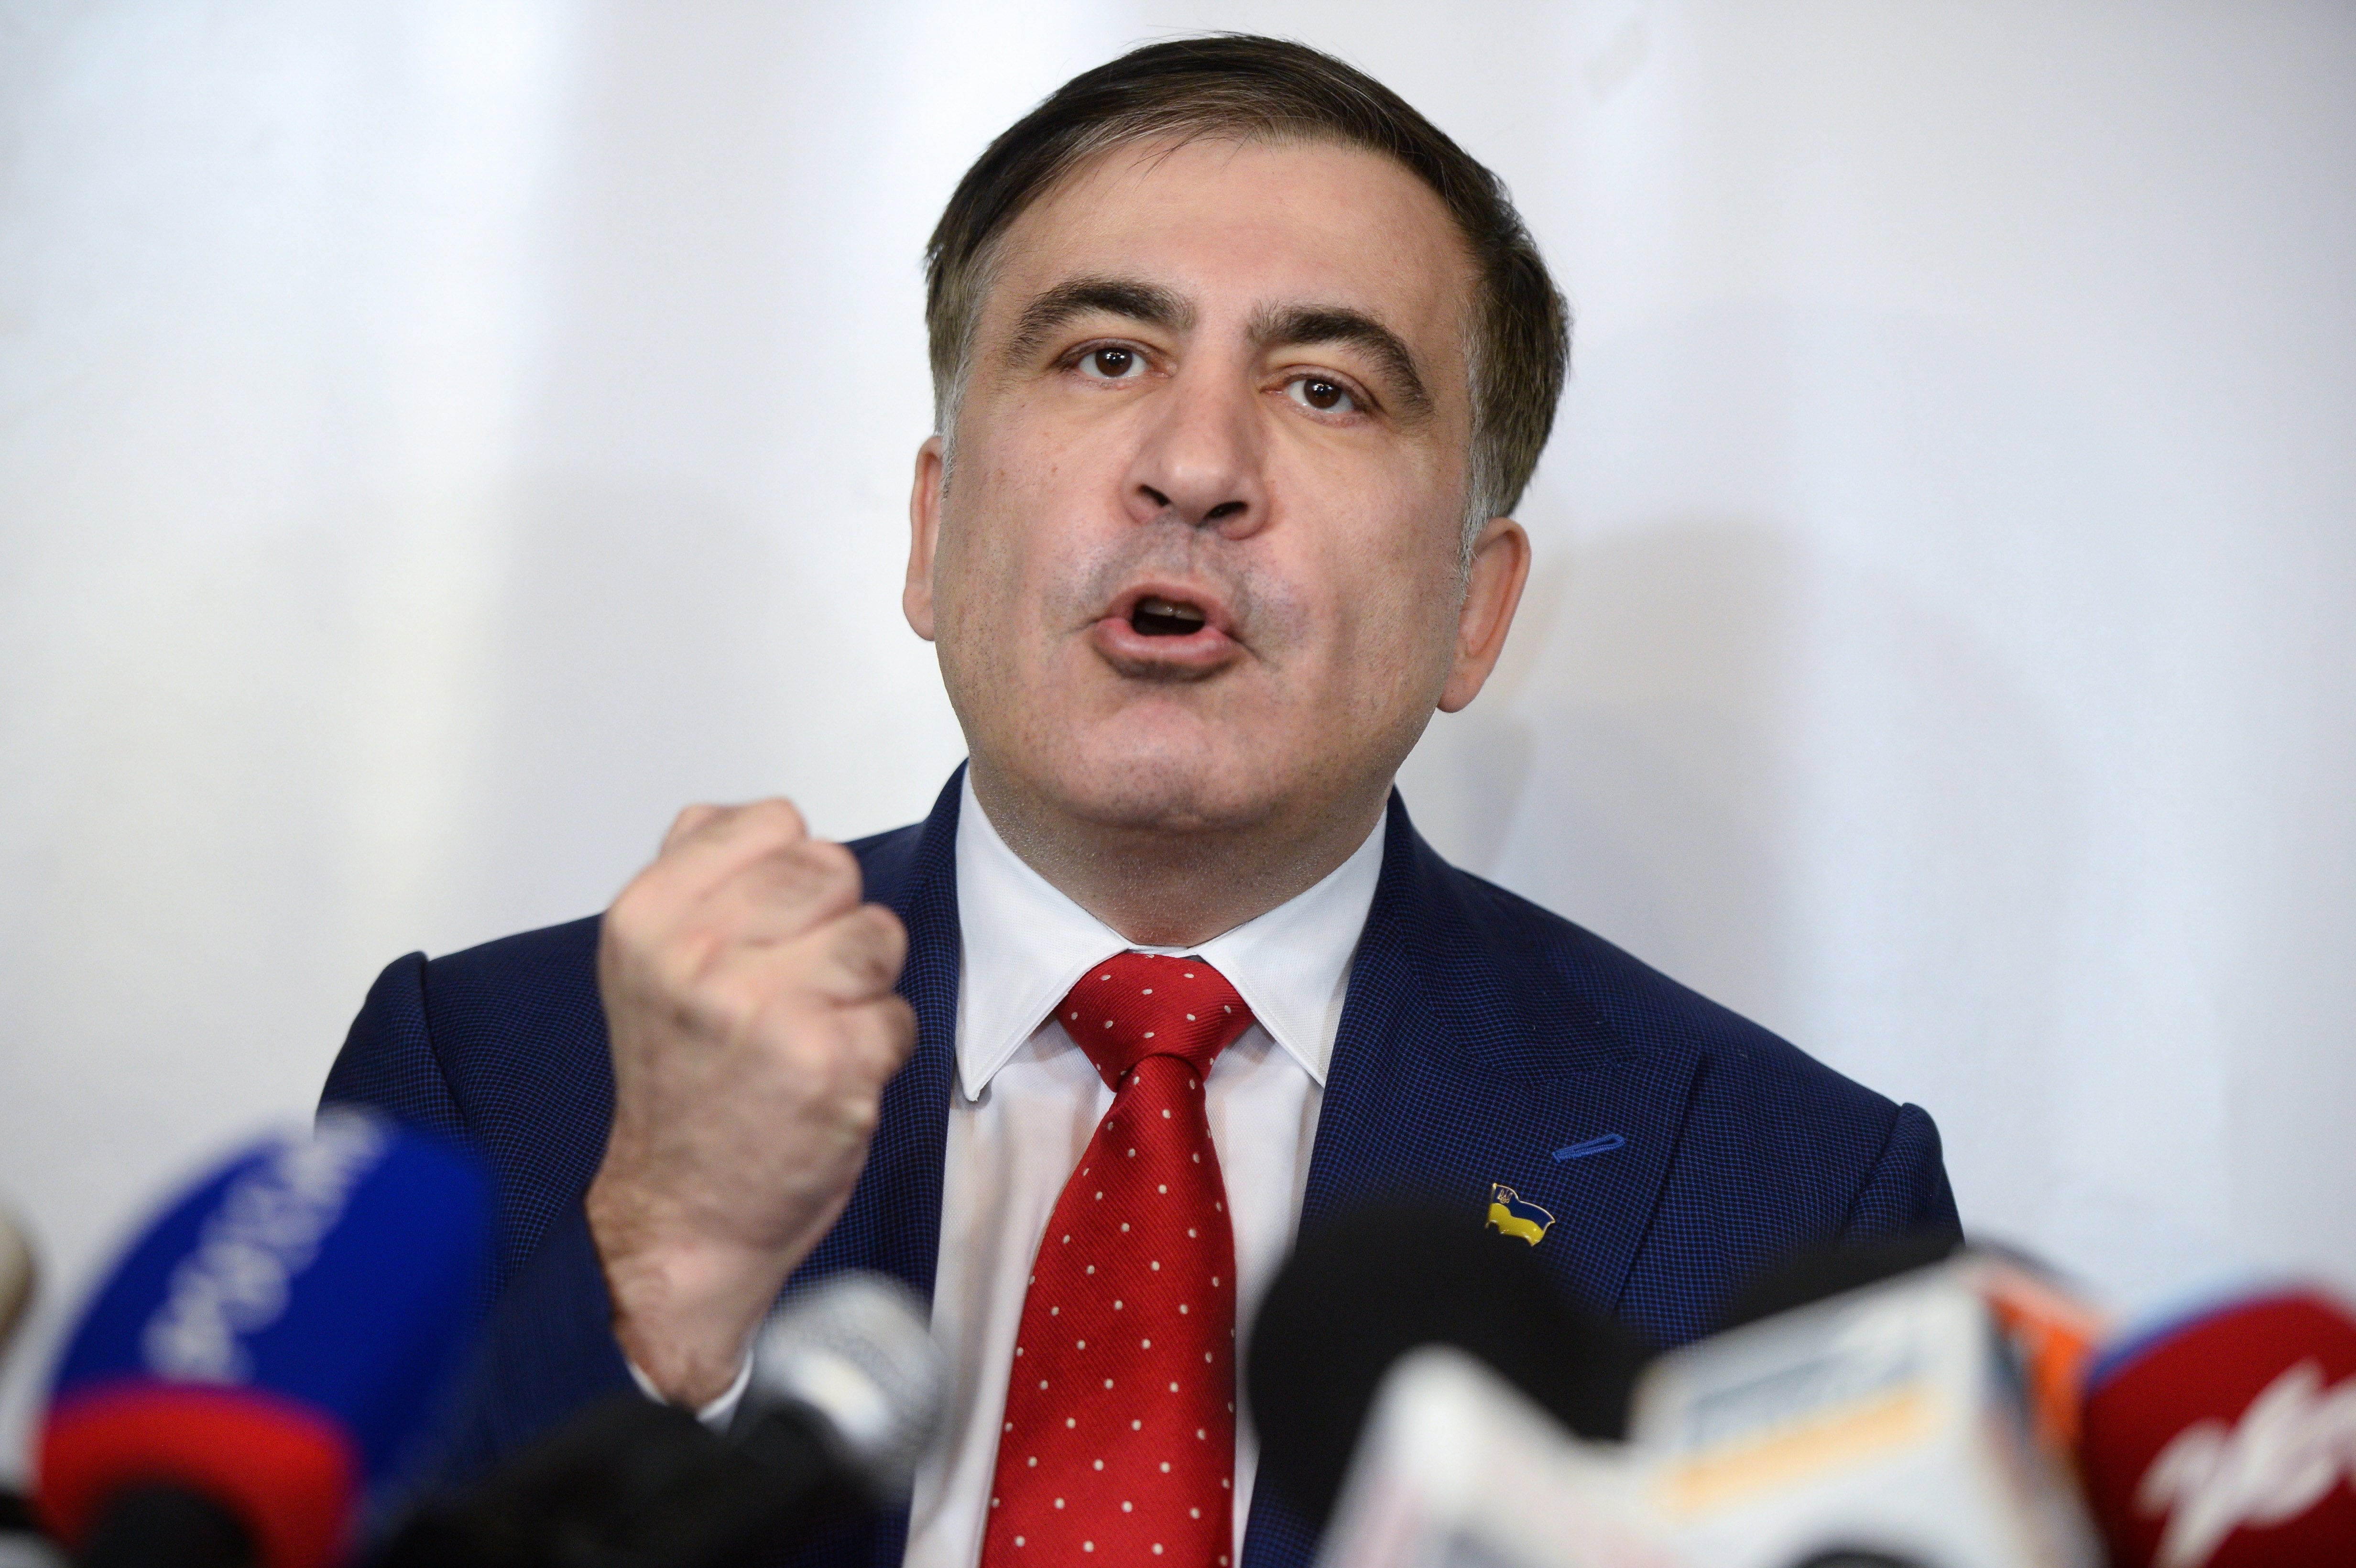 michail saakasjvili georgië president sandra roelofs